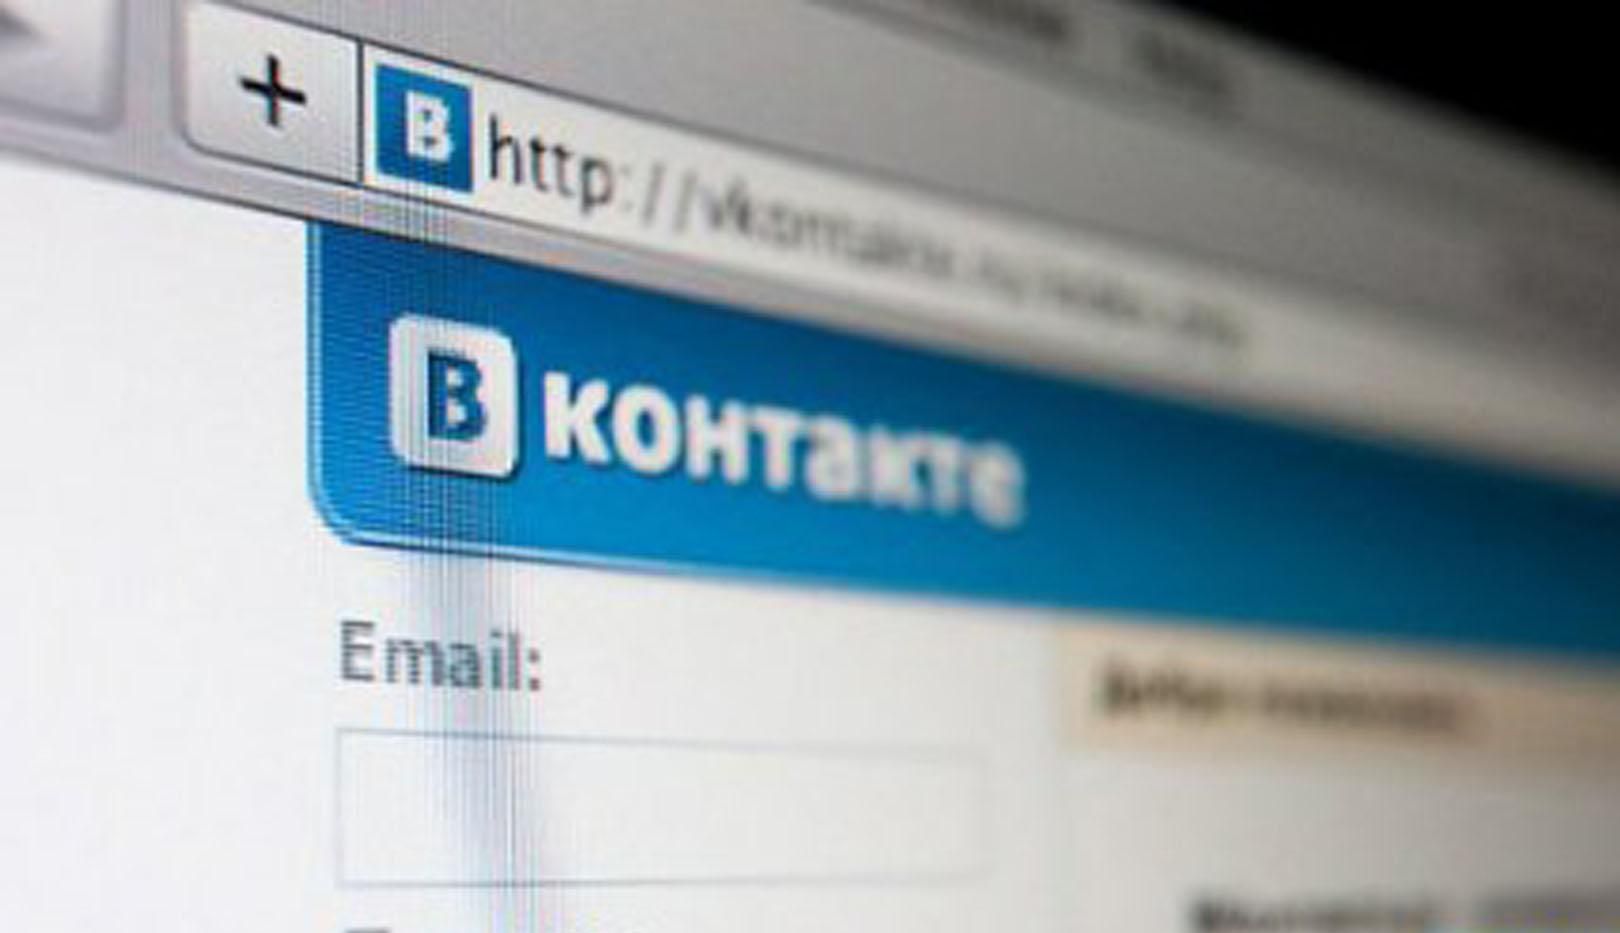 "ВКонтакте" йде з України, – ЗМІ